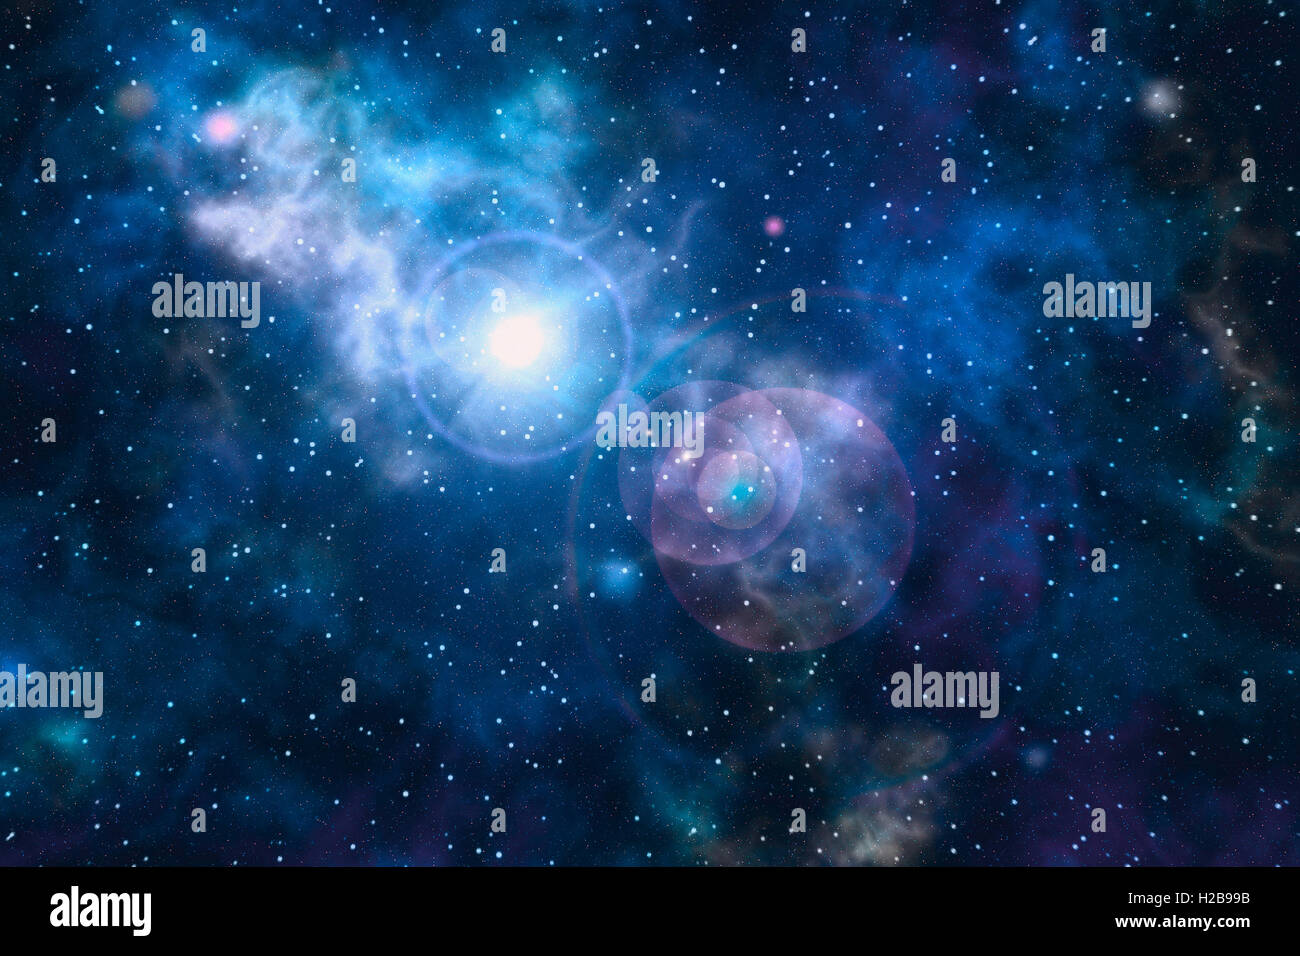 Texture de fond en bleu au point de vue artistique sur l'explosion de supernova. Peut être utilisée comme papier peint. Banque D'Images